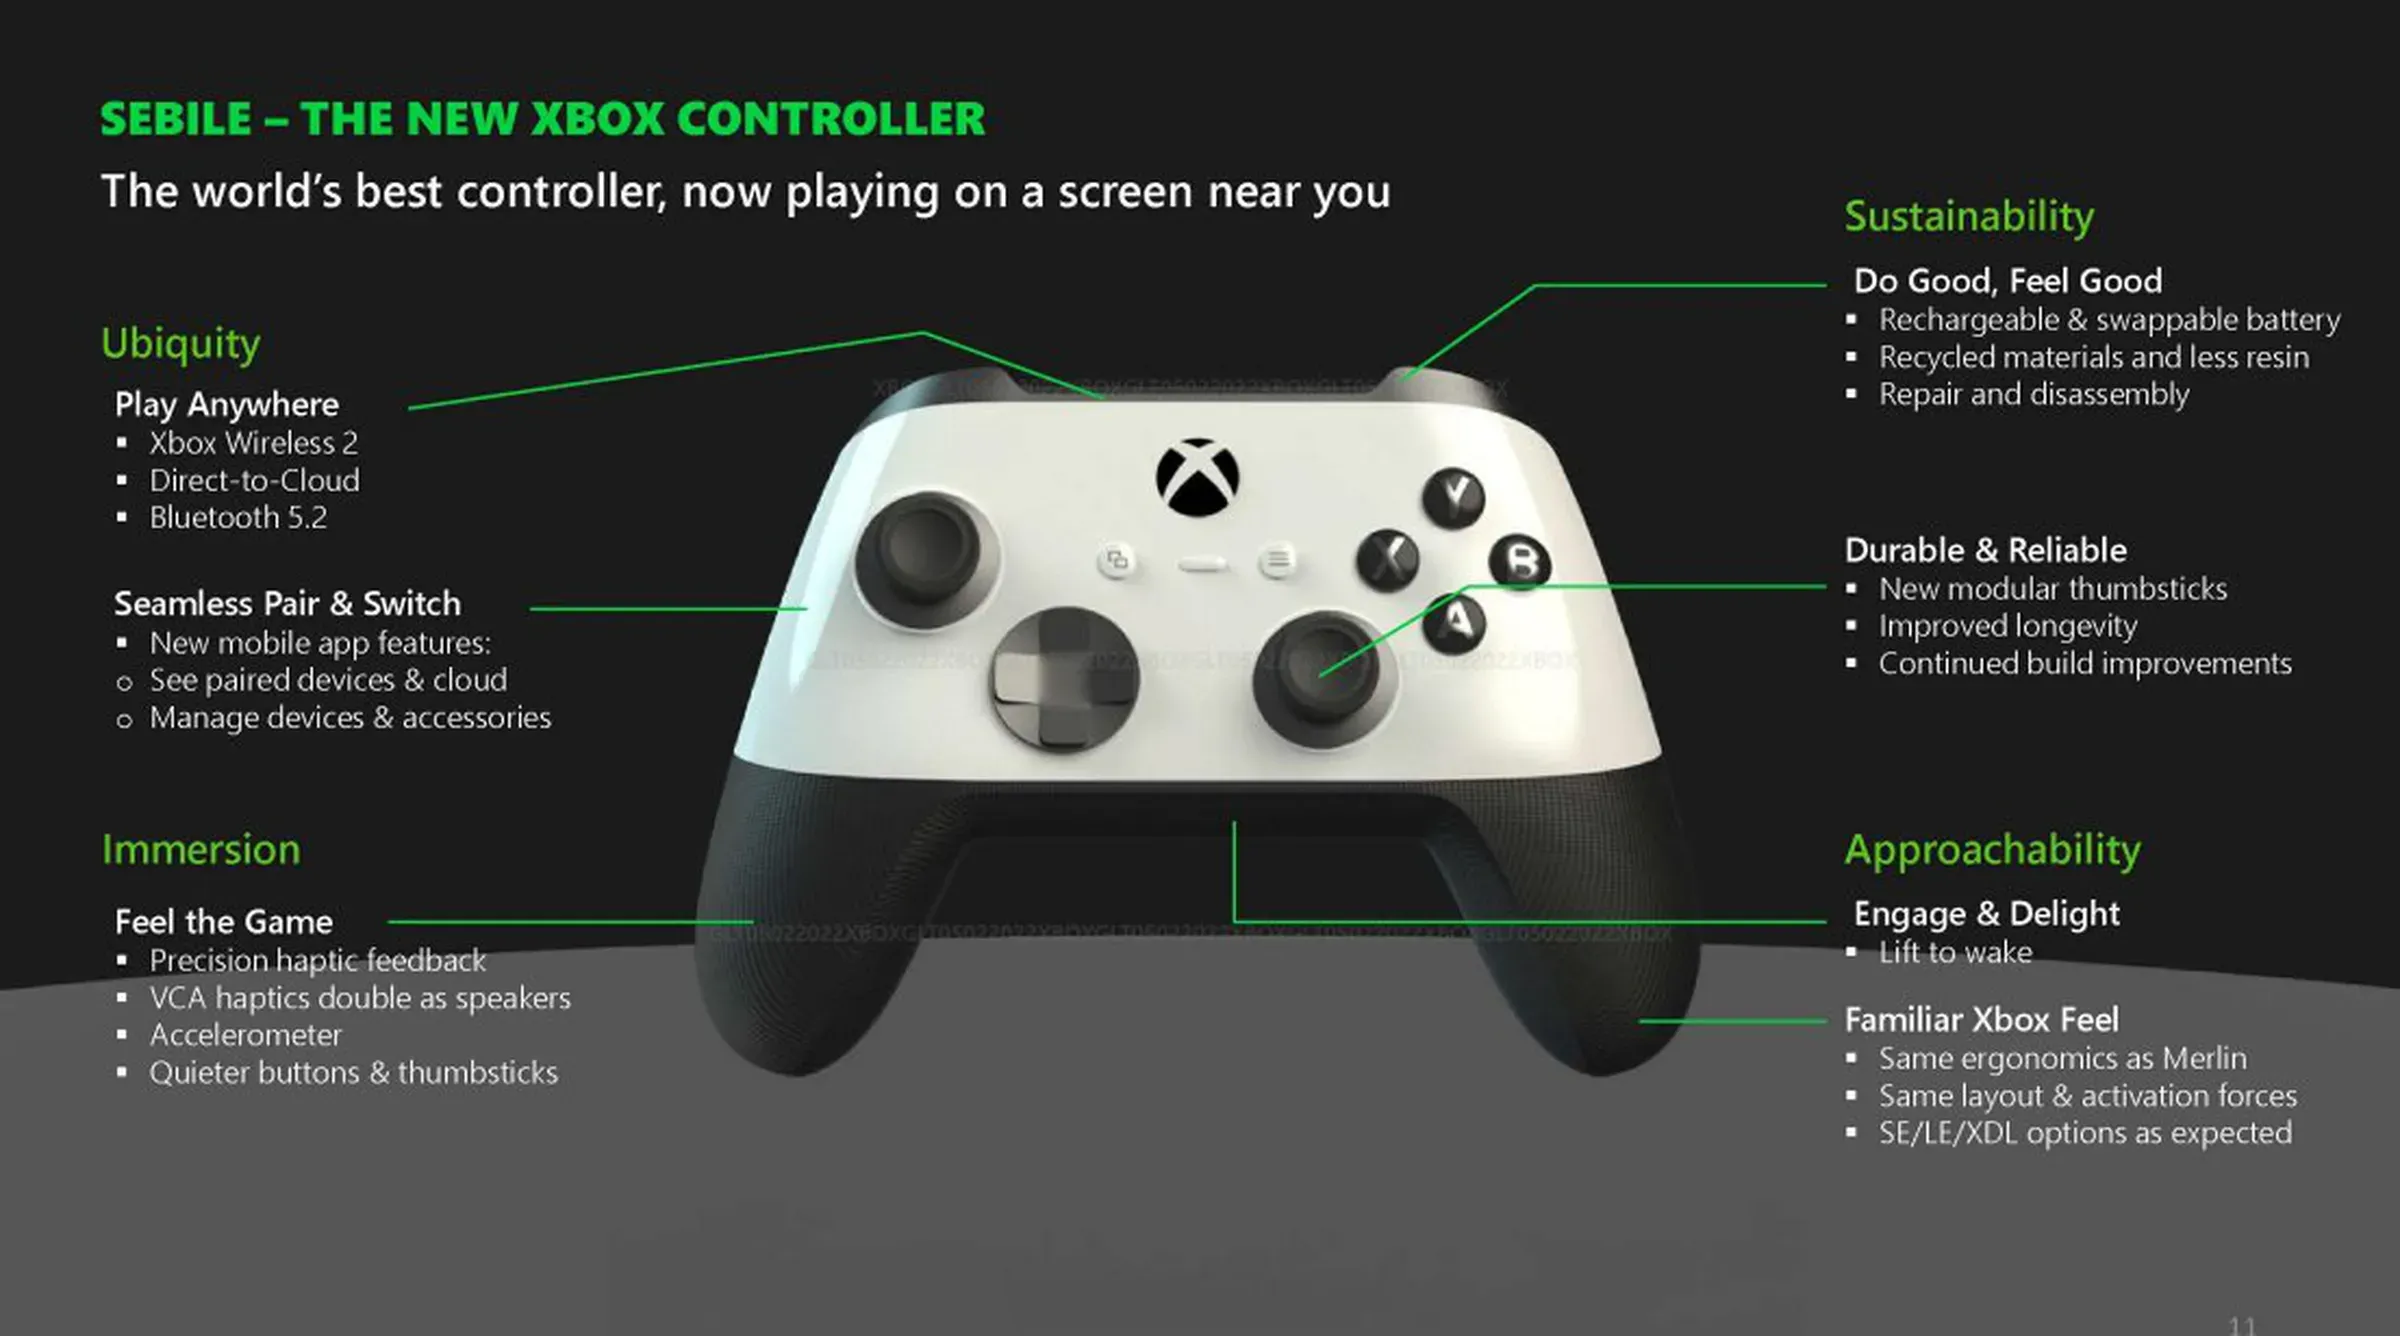 Imagen que muestra un controlador de Xbox llamado "Sebile", que tiene la mitad superior blanca y la mitad inferior negra.